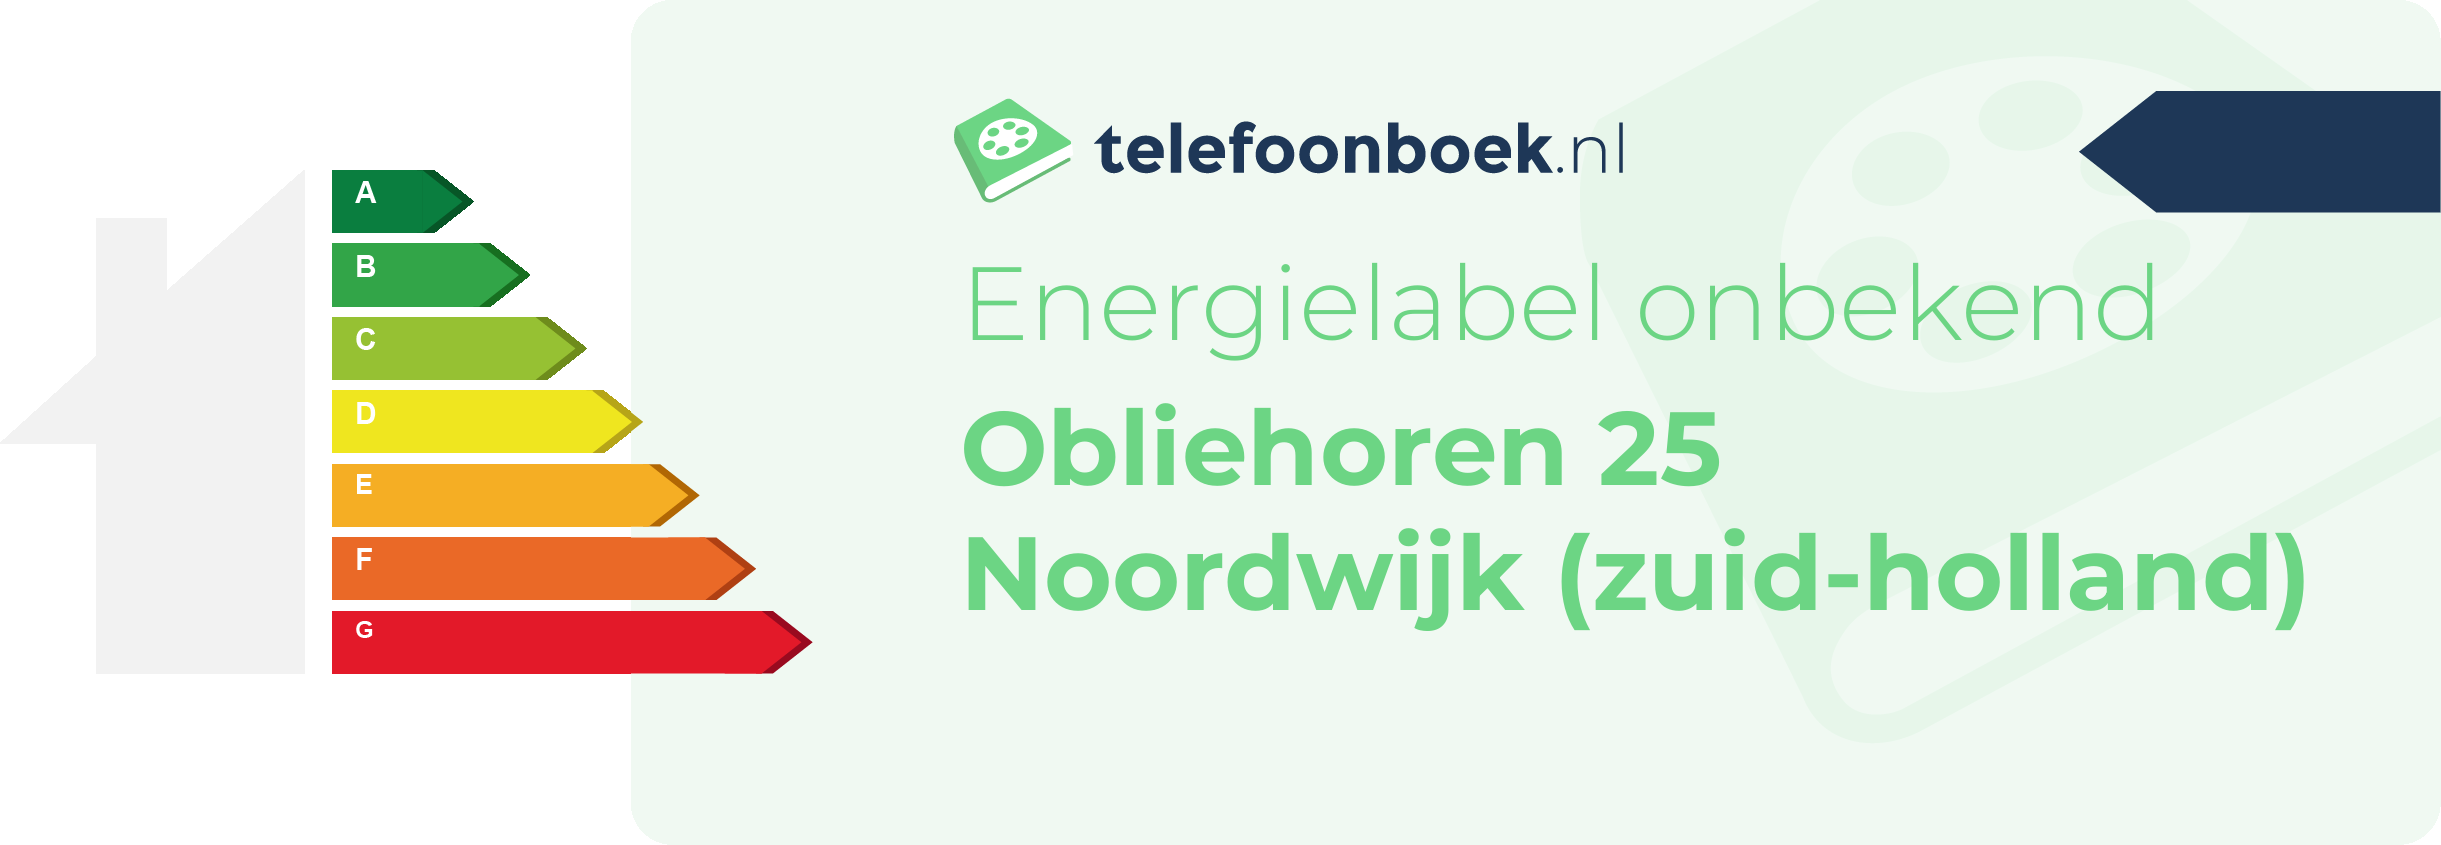 Energielabel Obliehoren 25 Noordwijk (Zuid-Holland)